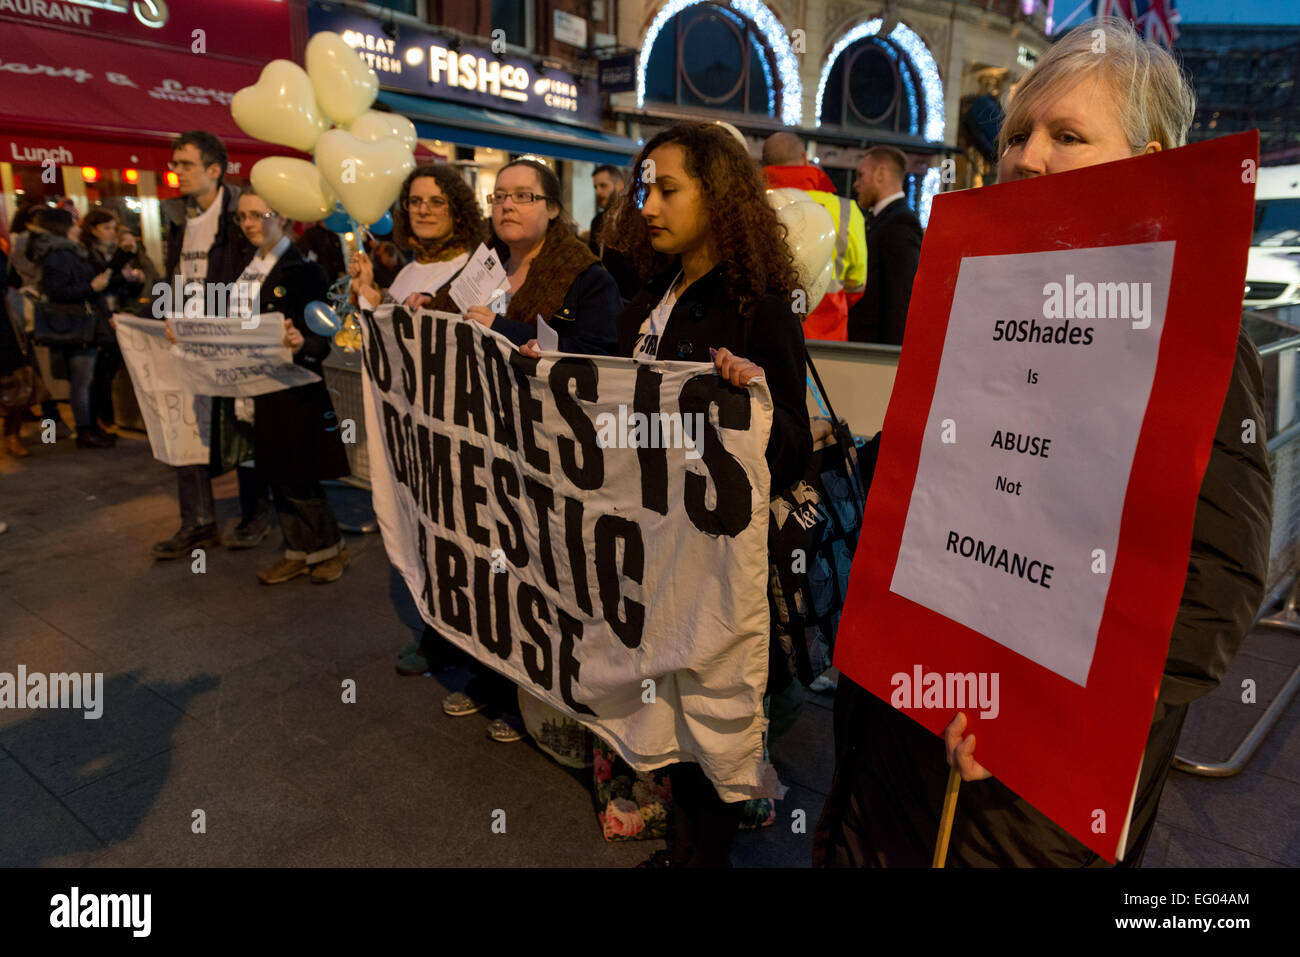 "Cincuenta tonos es abuso" protesta por película de estreno en el cine Odeon de Londres Foto de stock